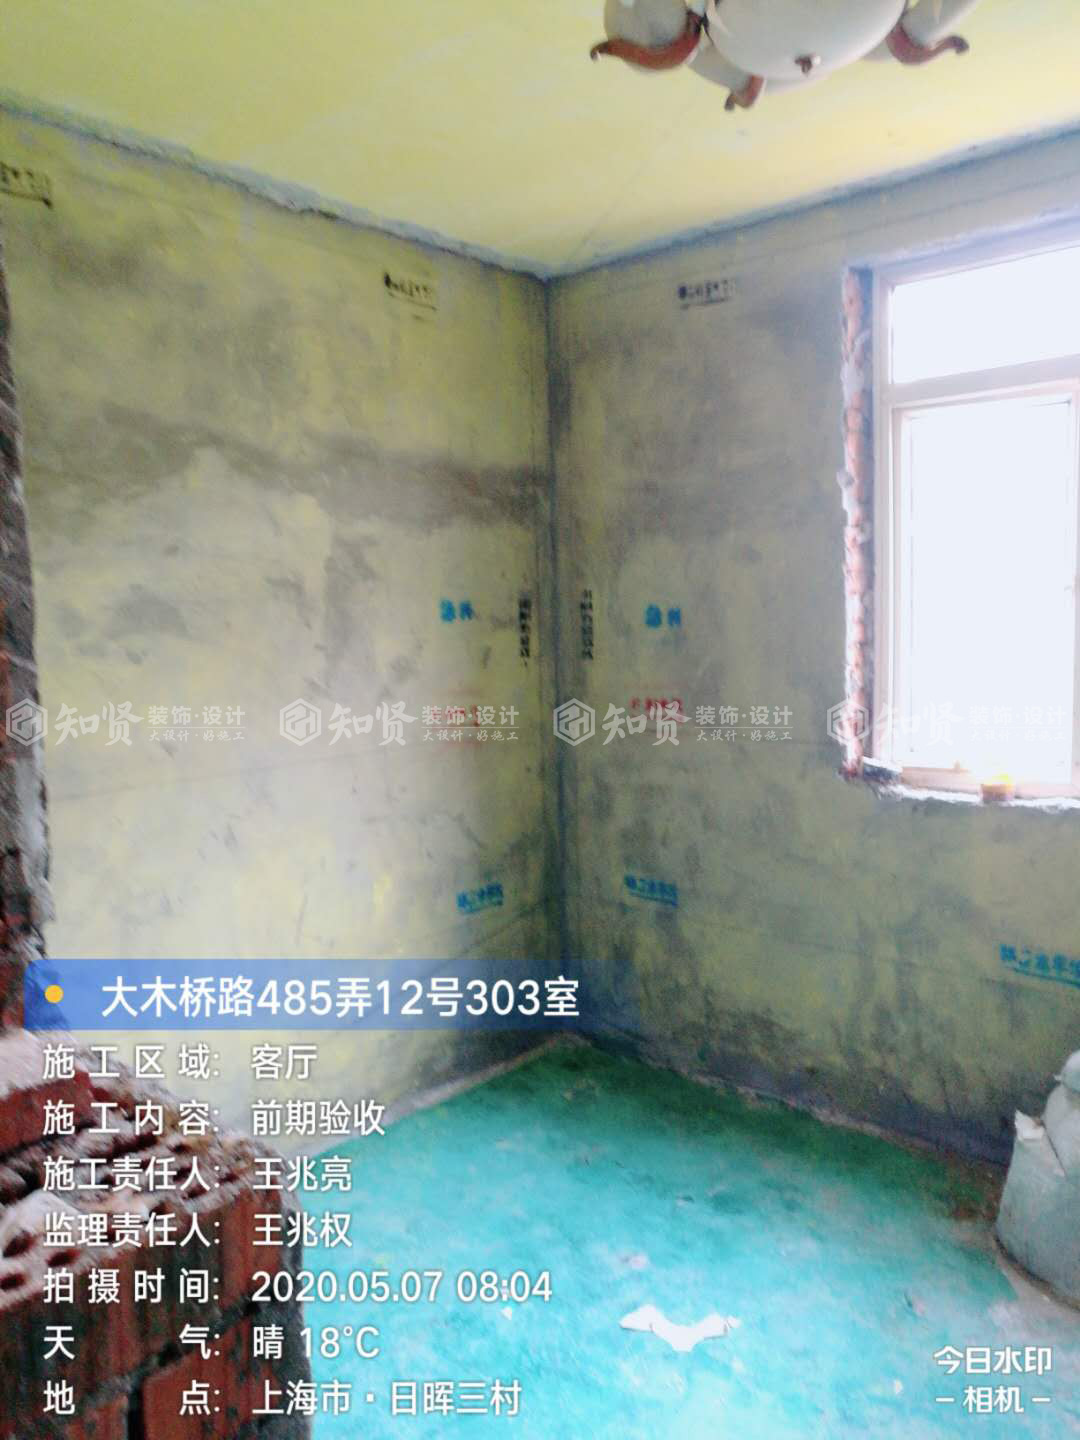 【装修日记】新家装修--水电、泥木篇！#装修方案##上海装修##装修施工#